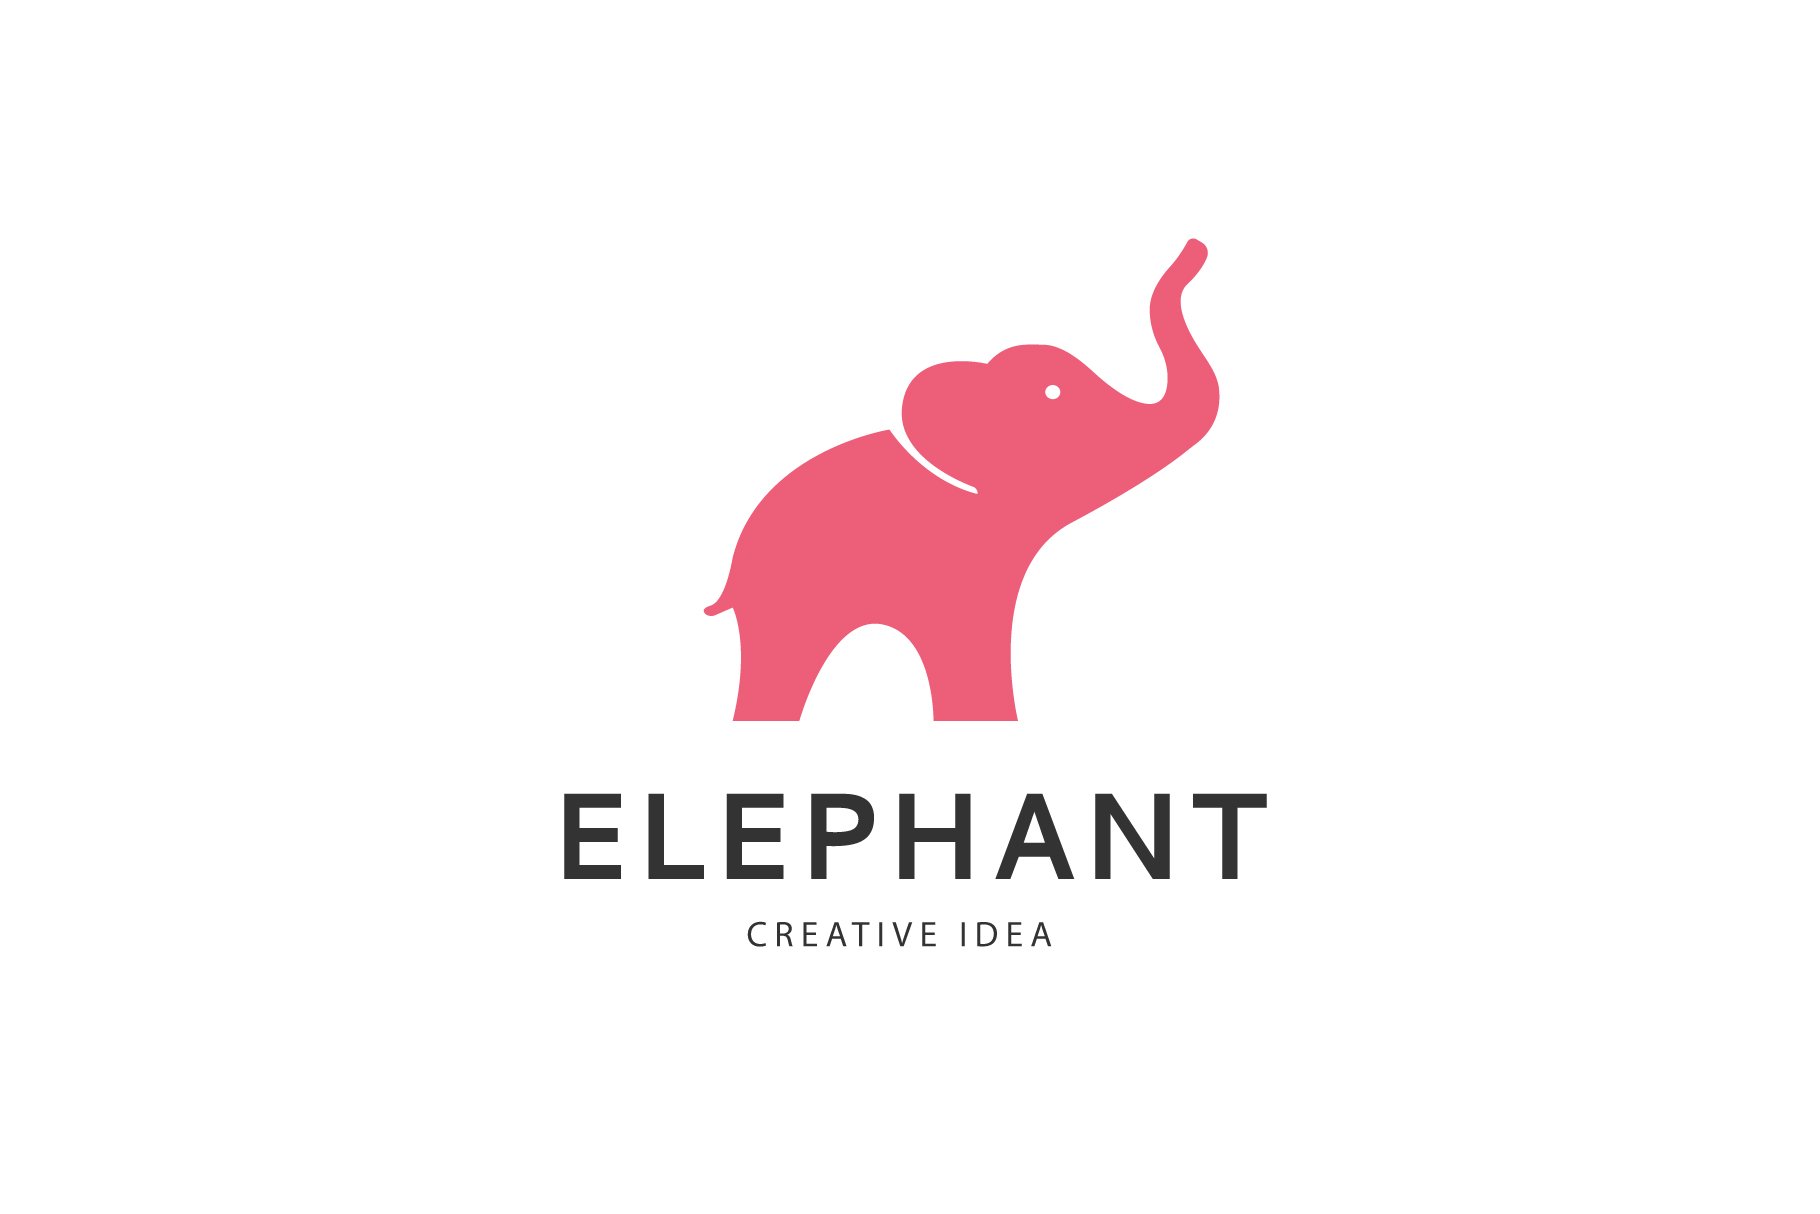 Elephant logo design cover image.